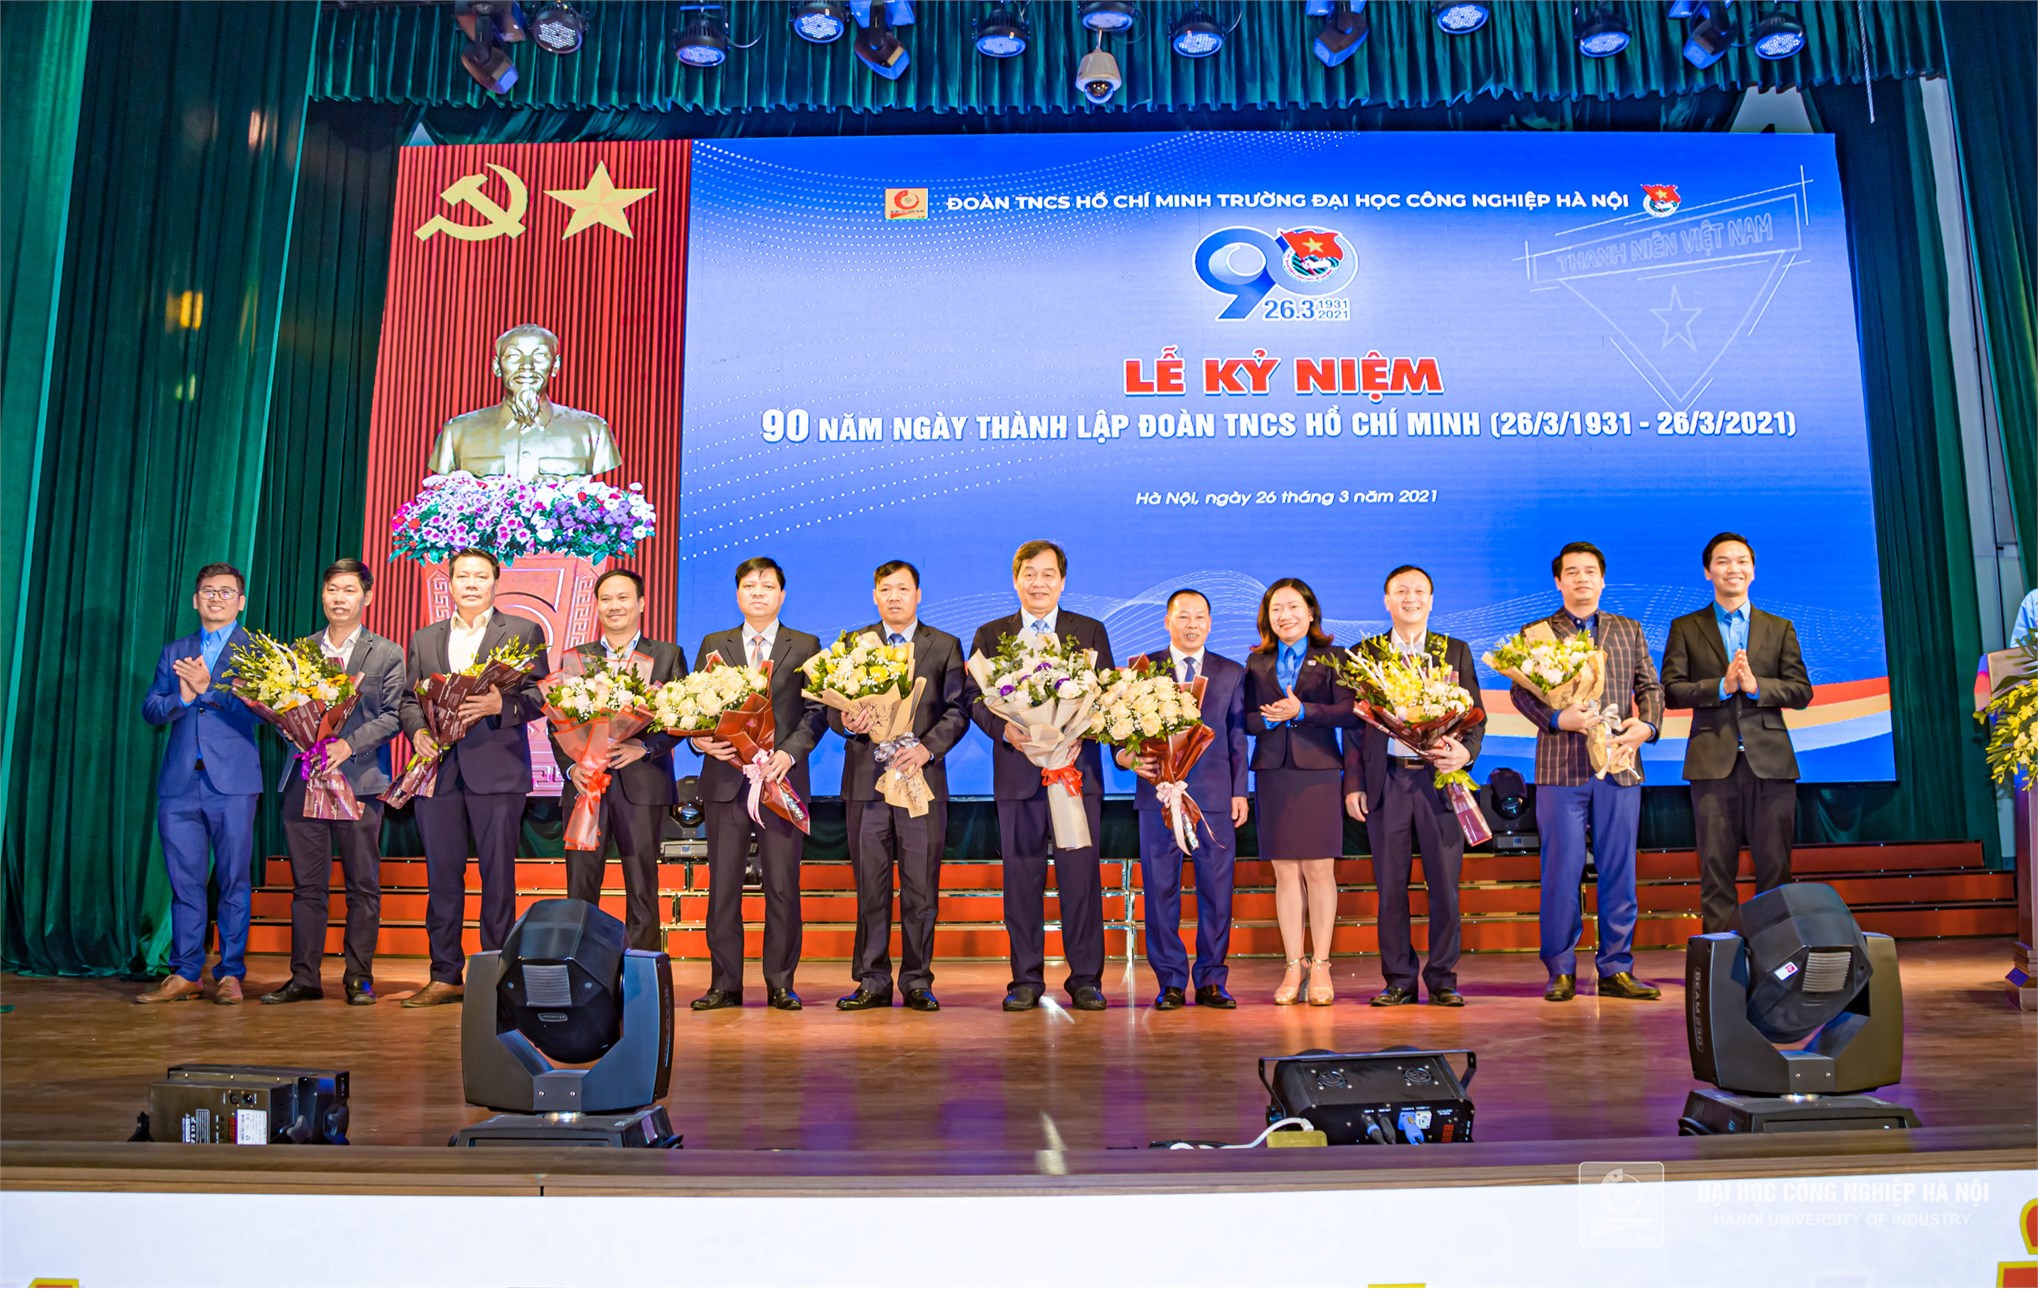 Tuổi trẻ Đại học Công nghiệp Hà Nội kỷ niệm 90 năm ngày thành lập Đoàn TNCS Hồ Chí Minh